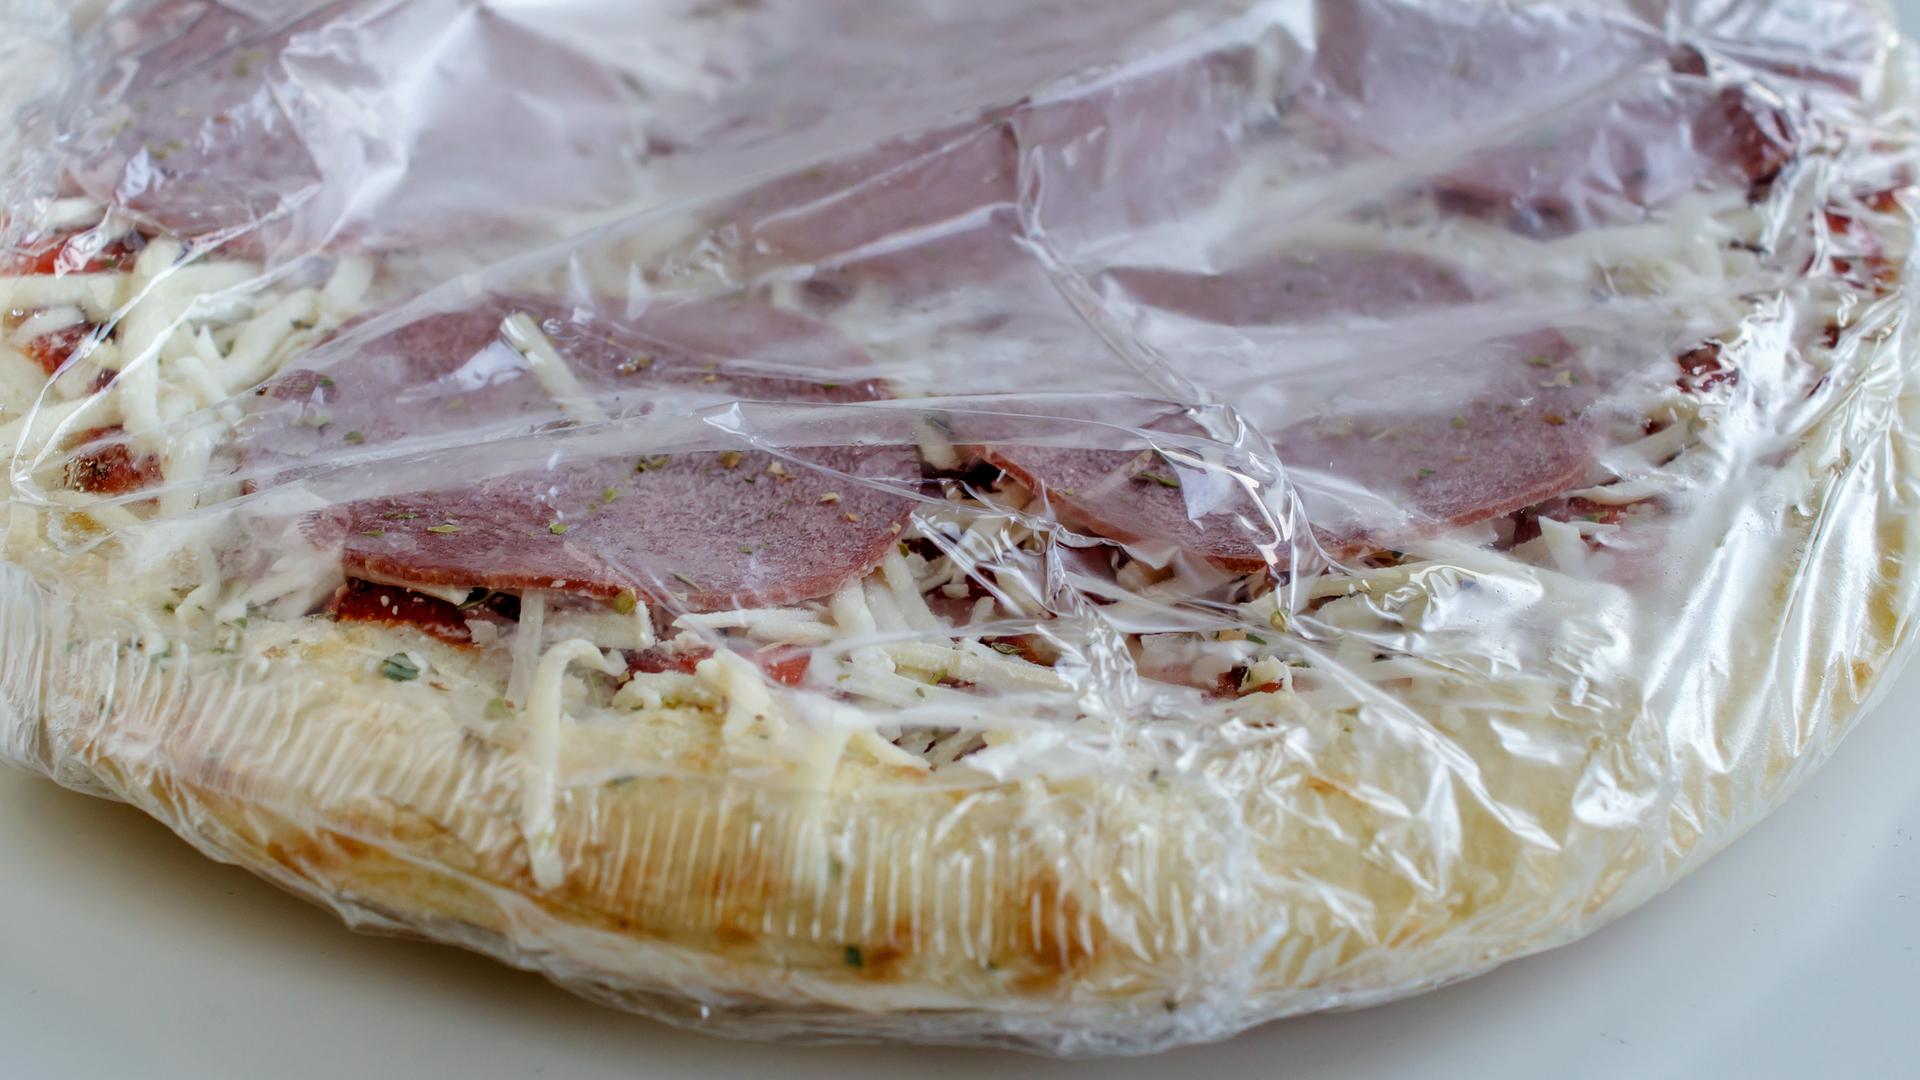 Tiefgekühlte Pizza aus der Packung als Convenience Food, noch in Folie verpackt